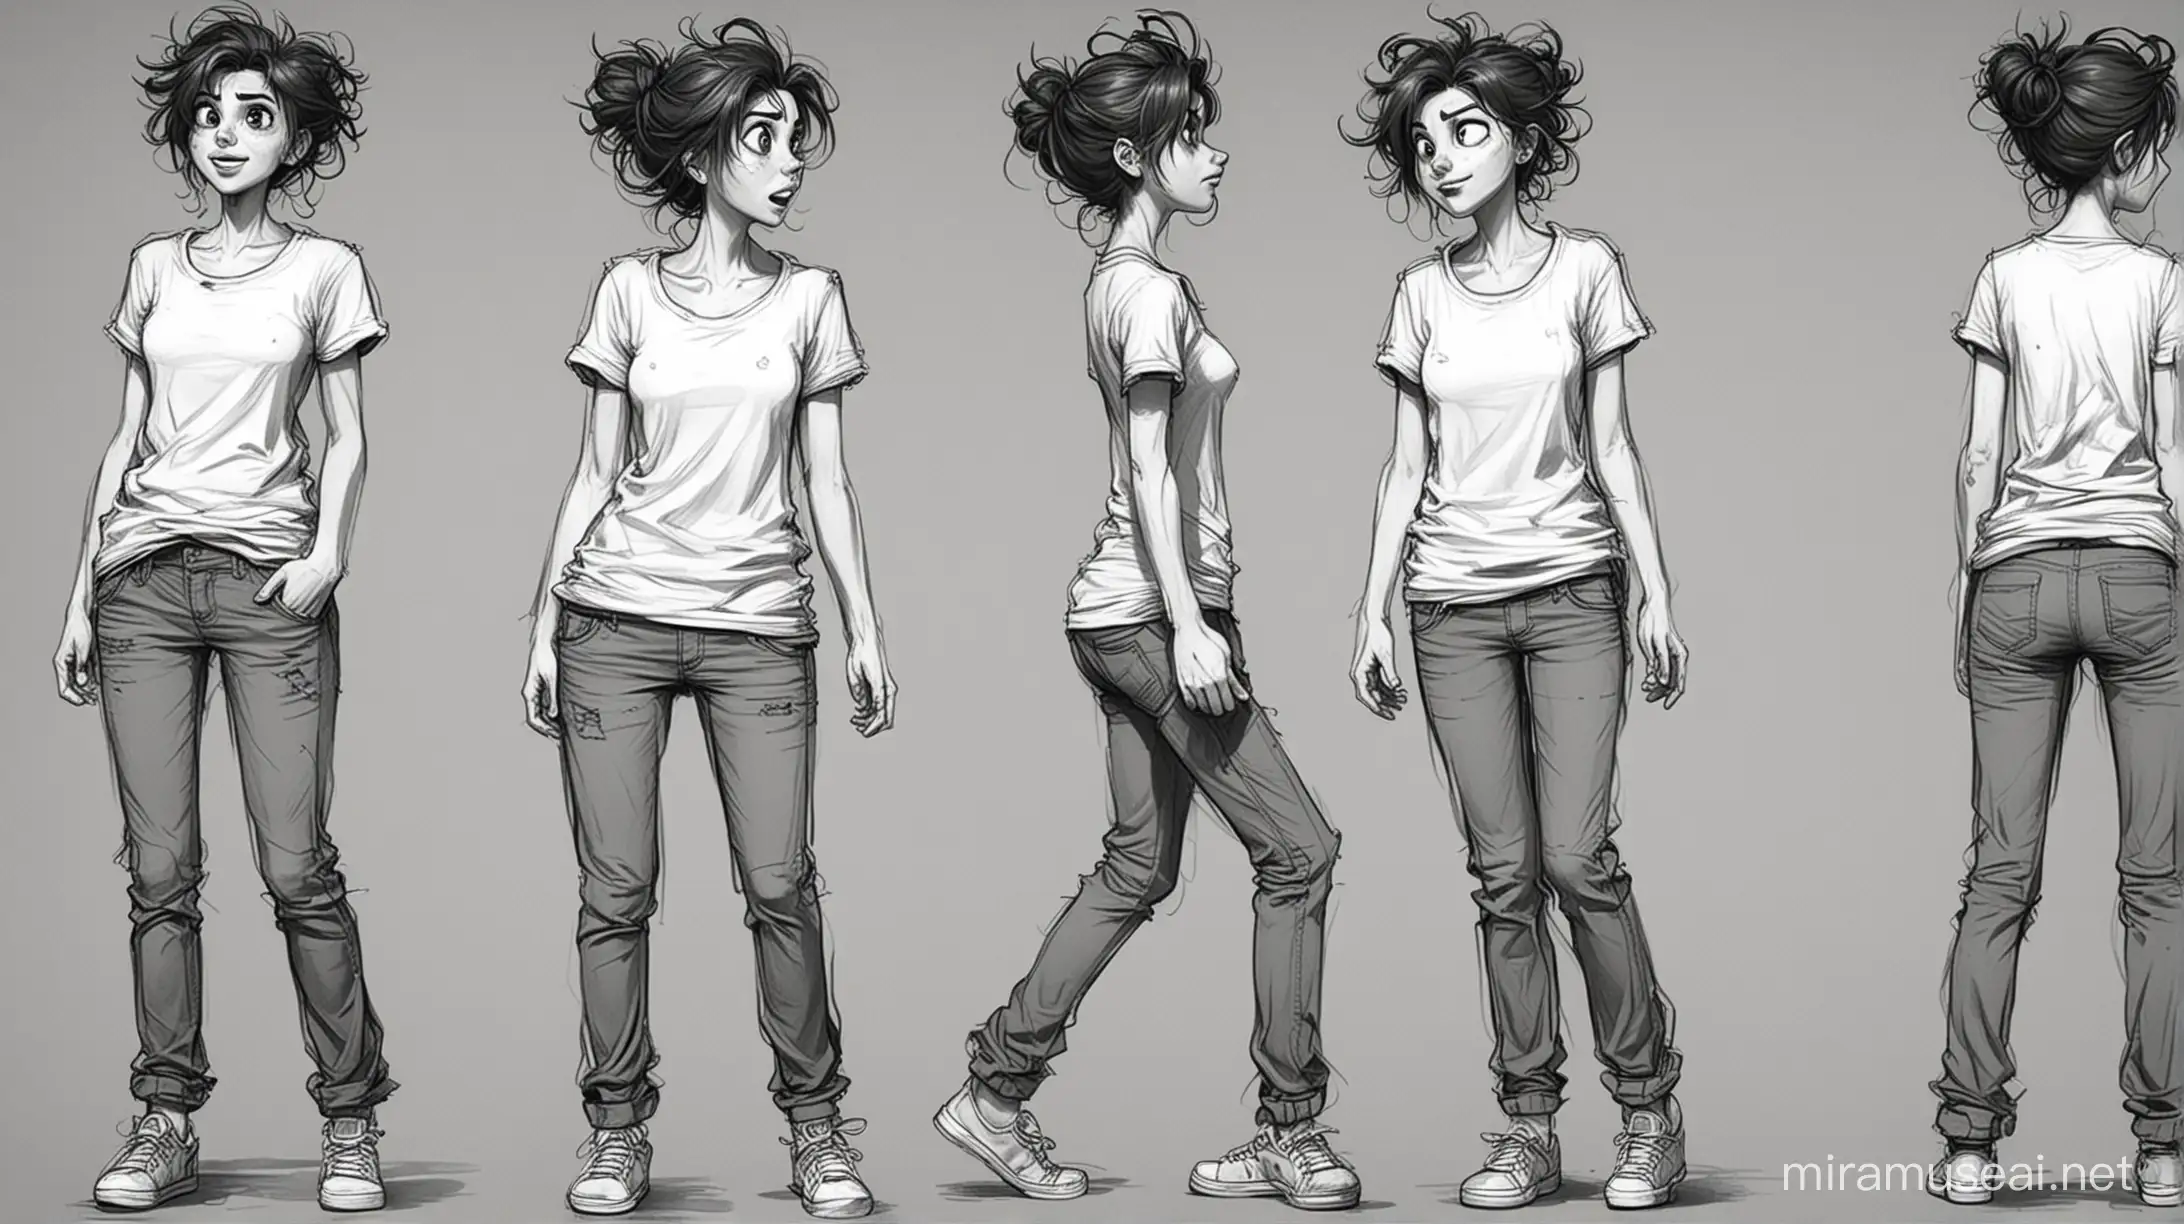 یک طراحی اسکیچ سیاه و سفید میخوام از زاویه و حالت های مختلف حرکتی یک کاراکتر کارتونی دختر تینیحر با موهای عجیب و دفرمه و صورت ساده با تی شرت شلوار ساده